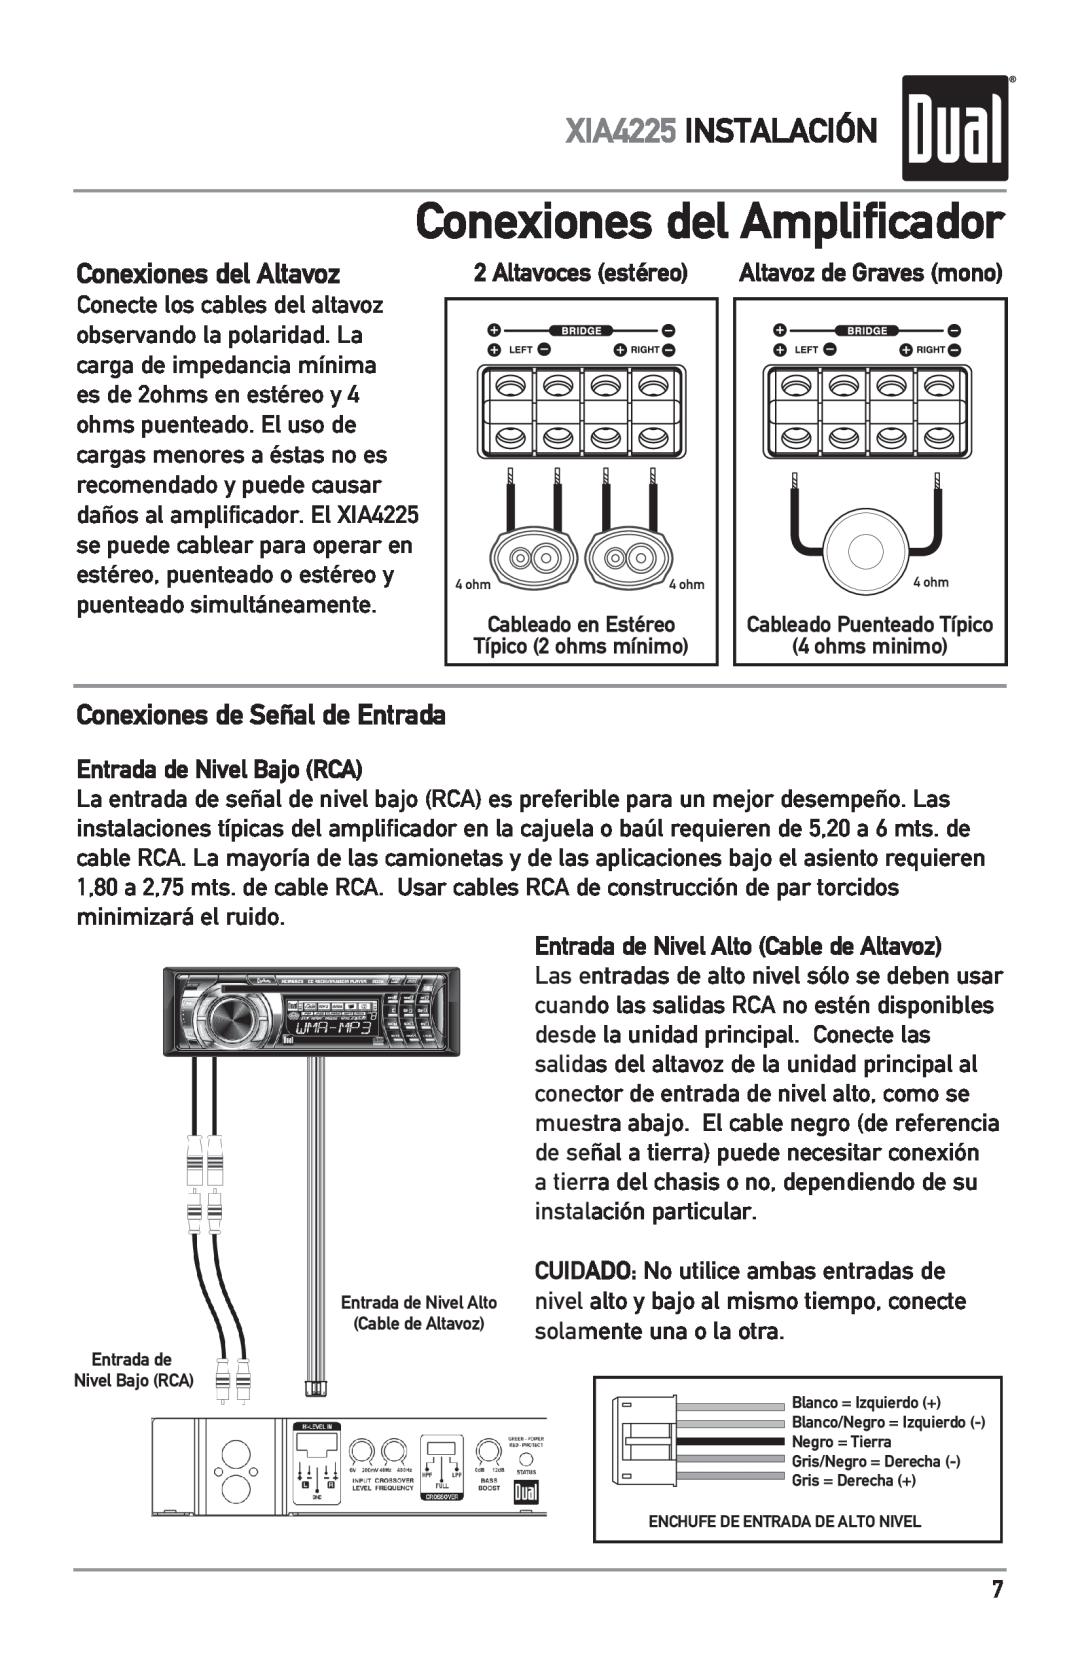 Dual Conexiones del Amplificador, Conexiones del Altavoz, Conexiones de Señal de Entrada, XIA4225 INSTALACIÓN 